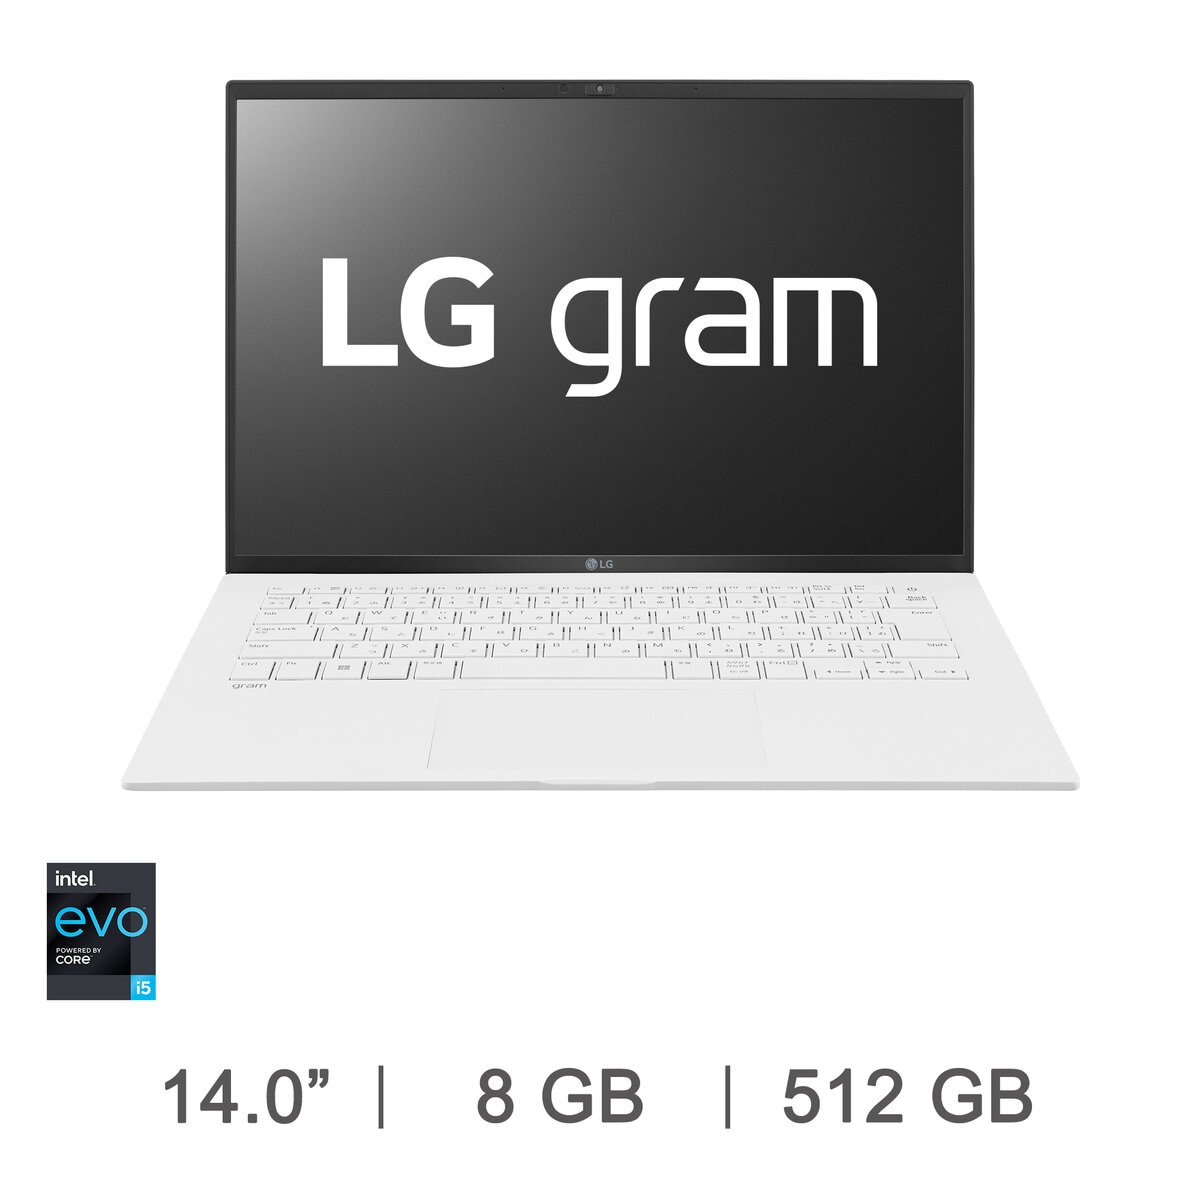 LG gram 14インチ ノートPC 14Z90Q-KR54J1